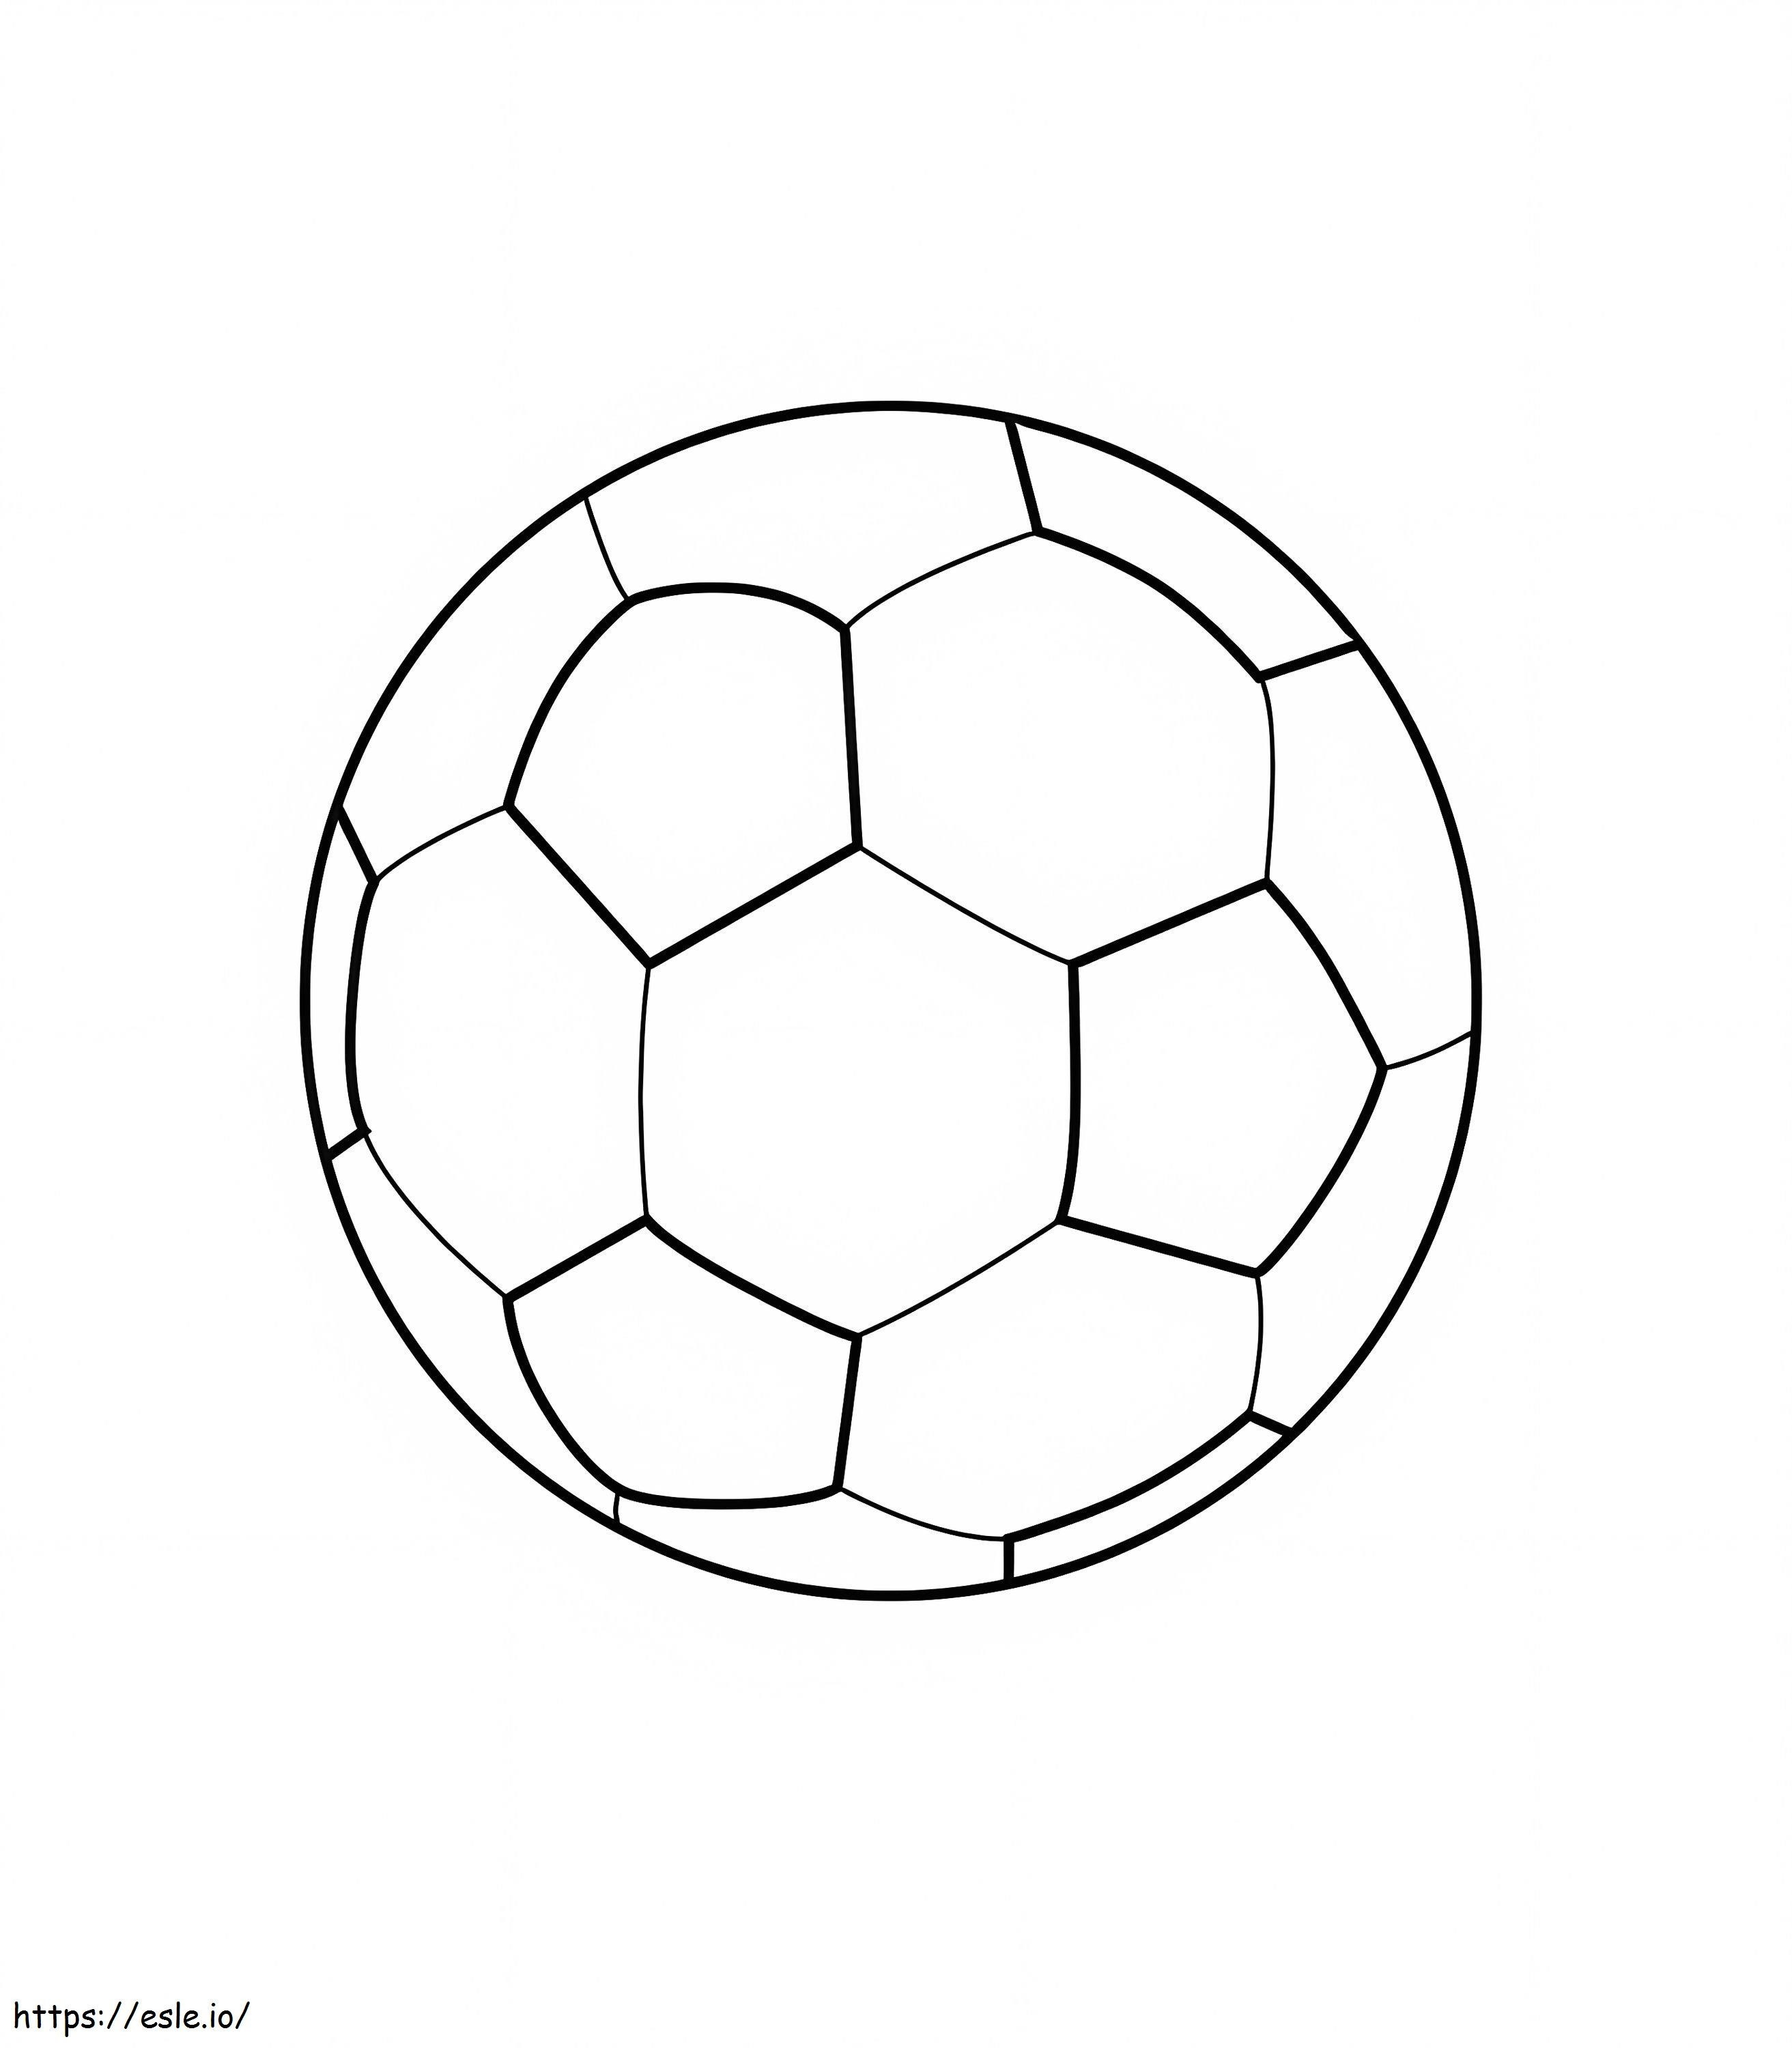 Pallone da calcio stampabile gratuito da colorare